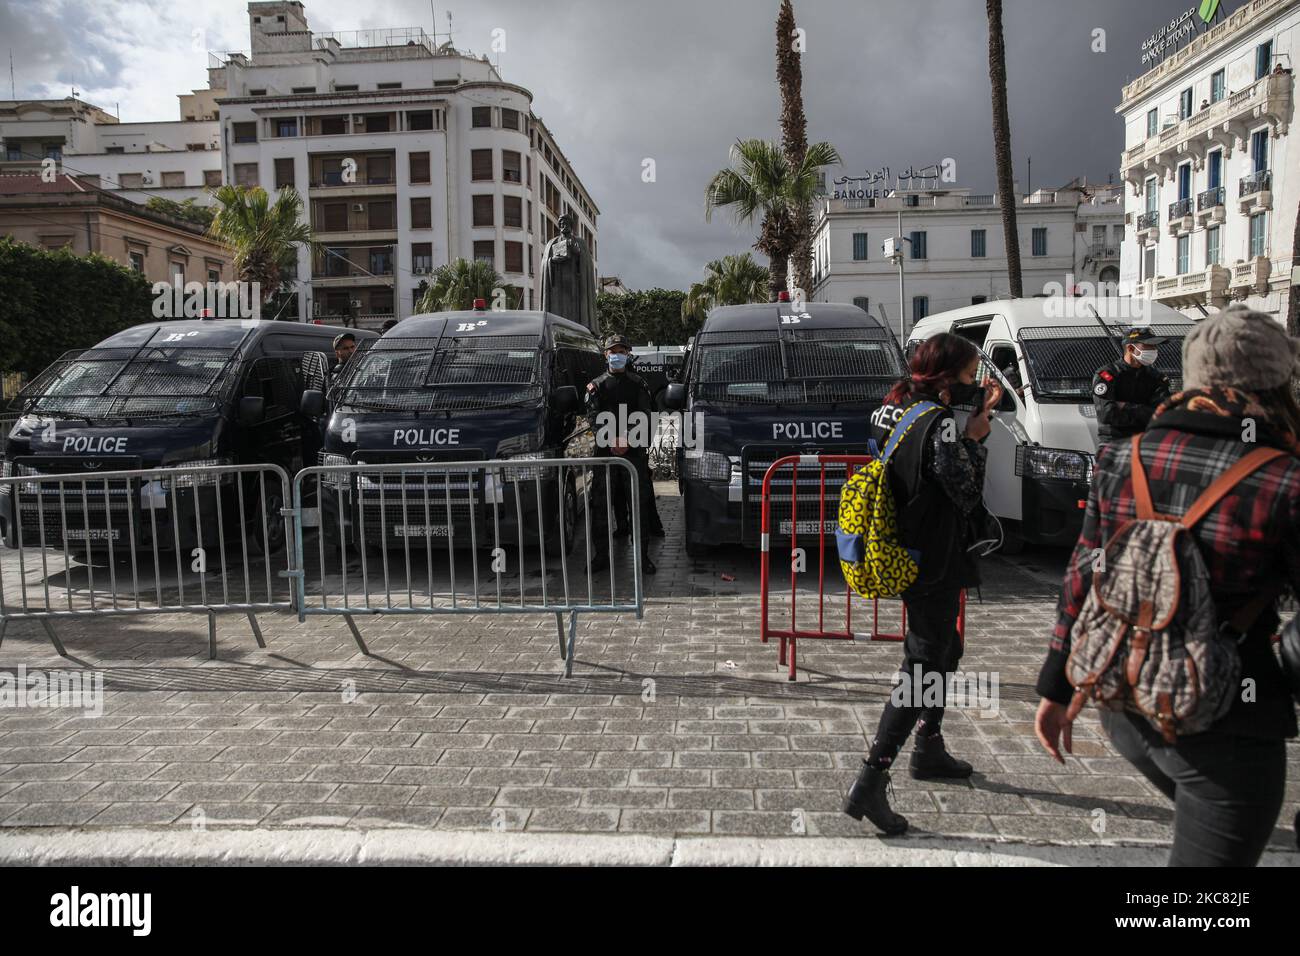 Polizeiwagen, die auf der Avenue Habib Bourguiba in der Hauptstadt Tunis während der Demonstration in der Hauptstadt Tunis gesehen wurden, um den Sturz des Regimes zu fordern und gegen die „Polizeigewalt“ zu protestieren, die bei den letzten nächtlichen Protesten im Land eingesetzt wurde. Sie forderten die Freilassung der jungen Demonstranten, die von der Polizei verhaftet wurden. Demonstranten protestierten auch gegen die Erklärung des Präsidenten des Shura-Rates der islamistischen Ennahdha-Partei Tunesiens, Abdelkarim Harouni, der sagte: „Die Kinder von Ennahdha werden vor Ort sein, um die Sicherheitskräfte zu unterstützen“. Demonstranten cha Stockfoto